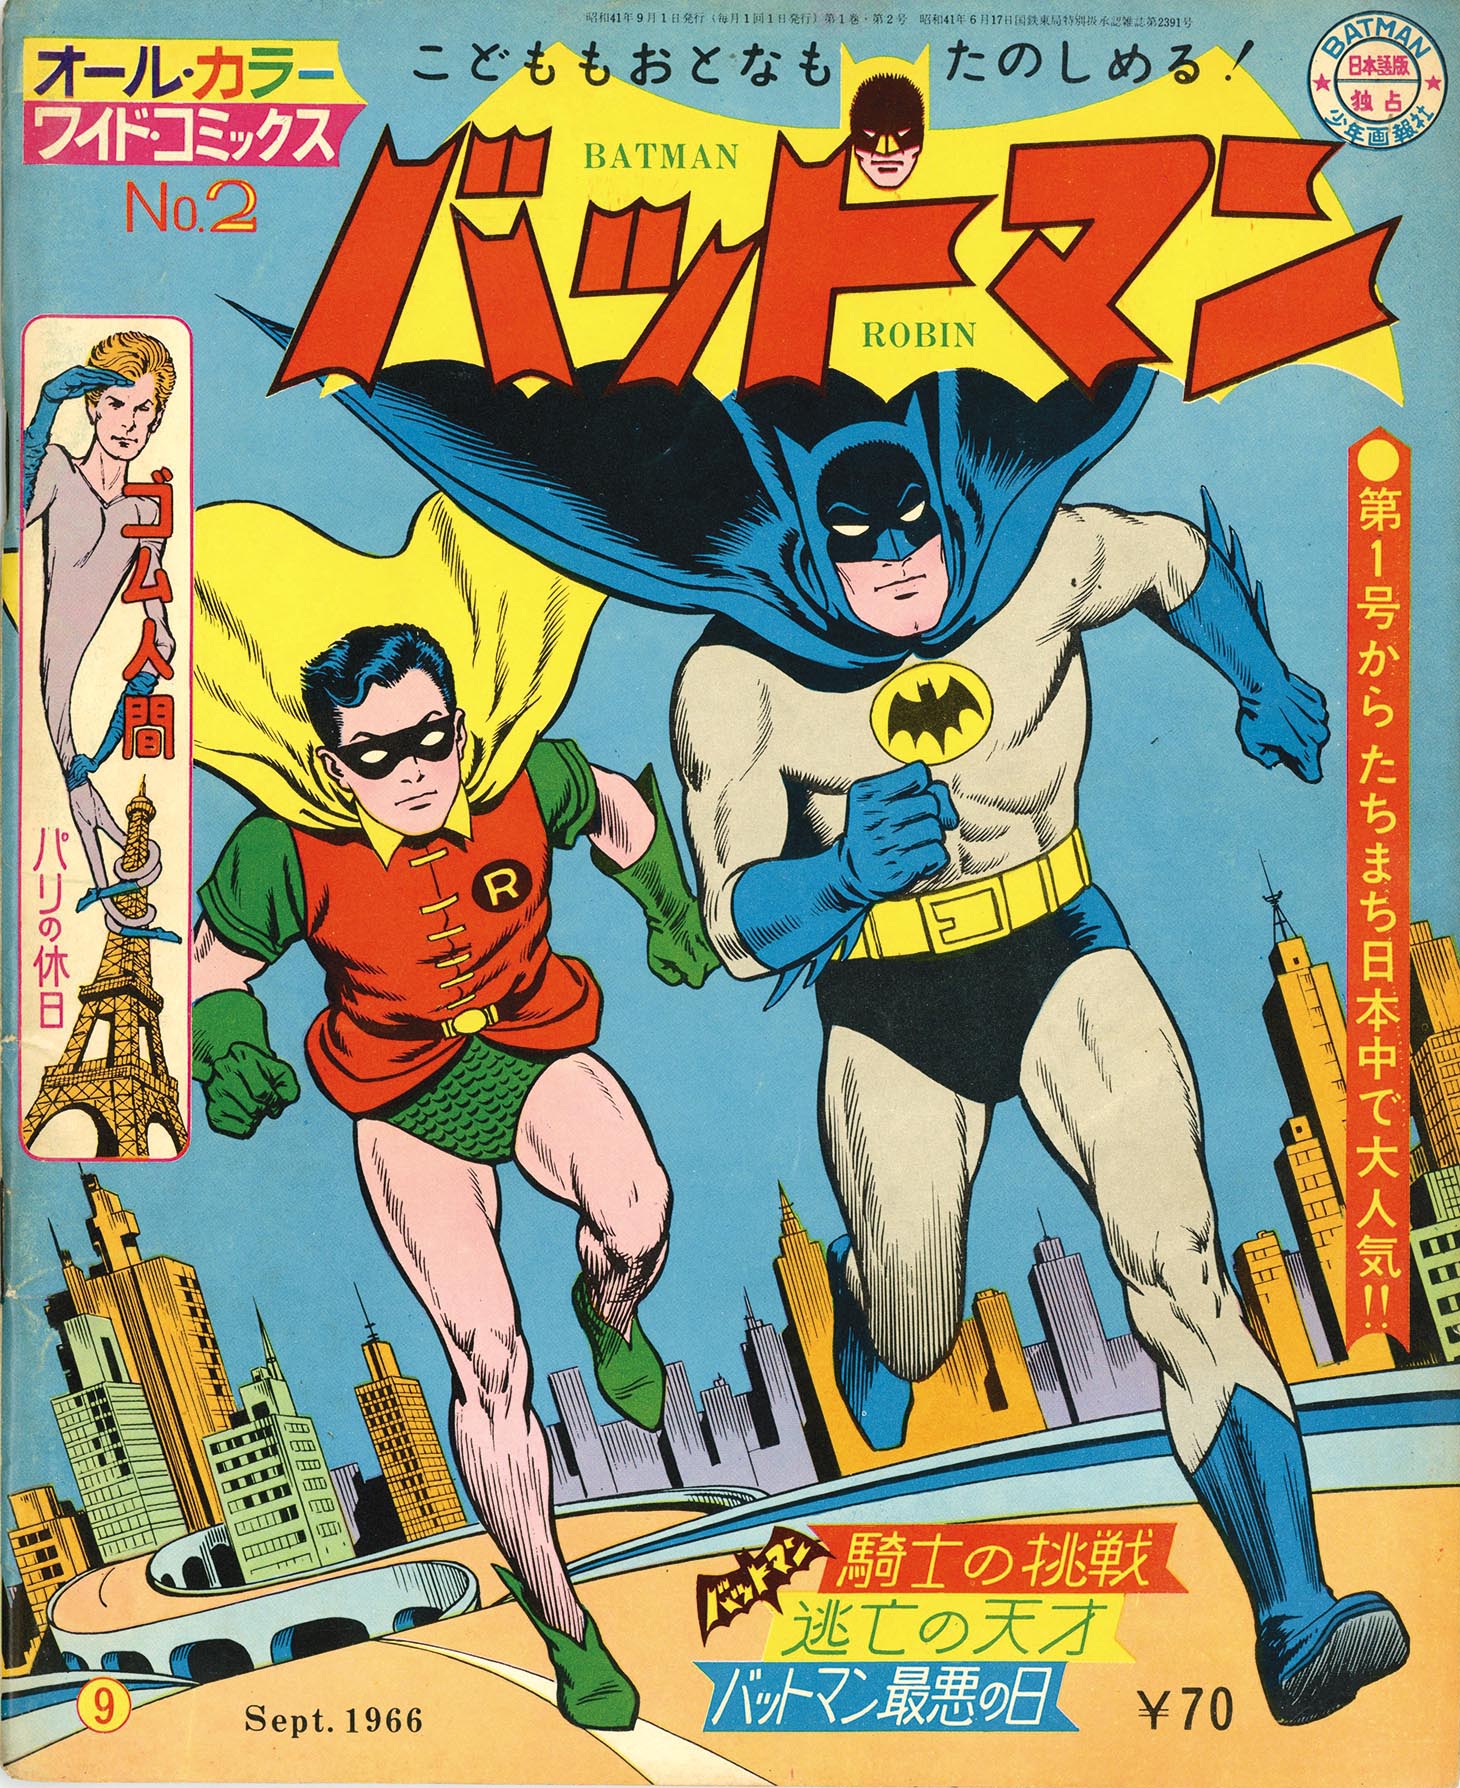 得価送料無料[珍品]少年画報社 バットマン No.4 1966年11月 当時物 BATMAN ロビン アメコミ 日本語版 独占 漫画 雑貨 バットマン